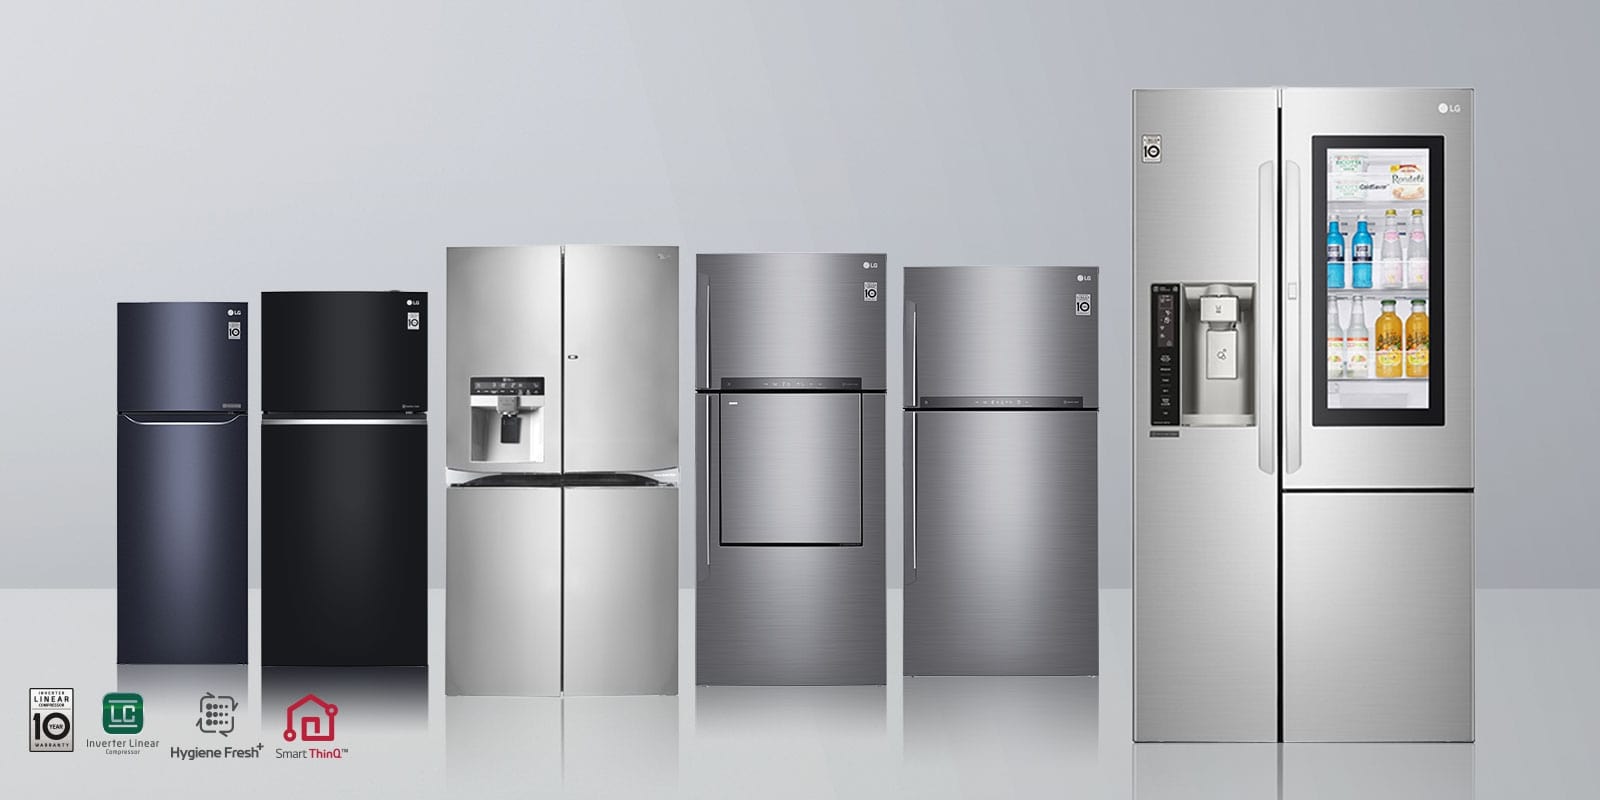 Tủ lạnh LG sở hữu nhiều thiết kế